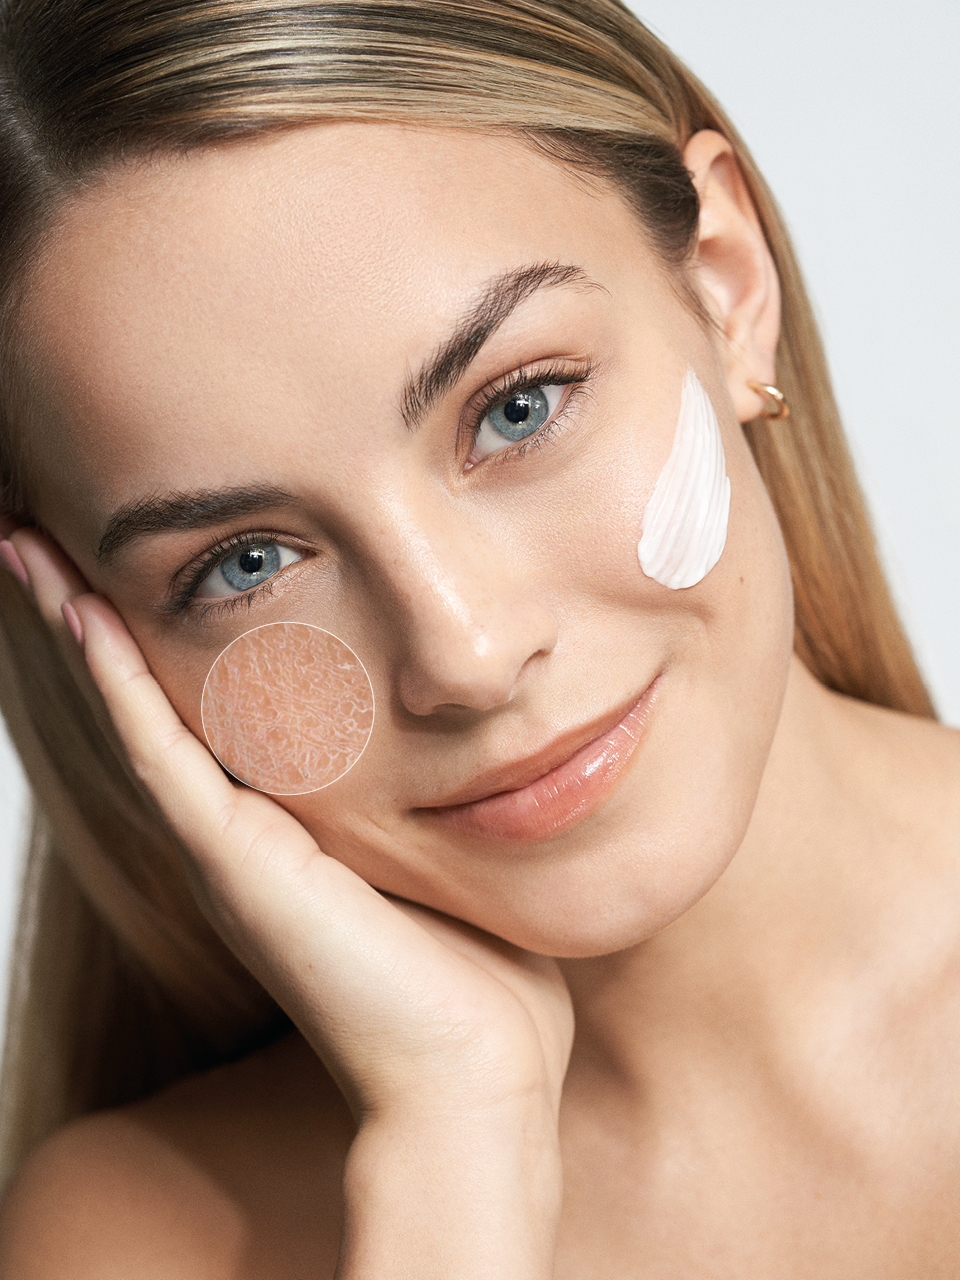 Droge huid | Oorzaken & tips - BABOR BABOR cosmetica en huidverzorging kopen.